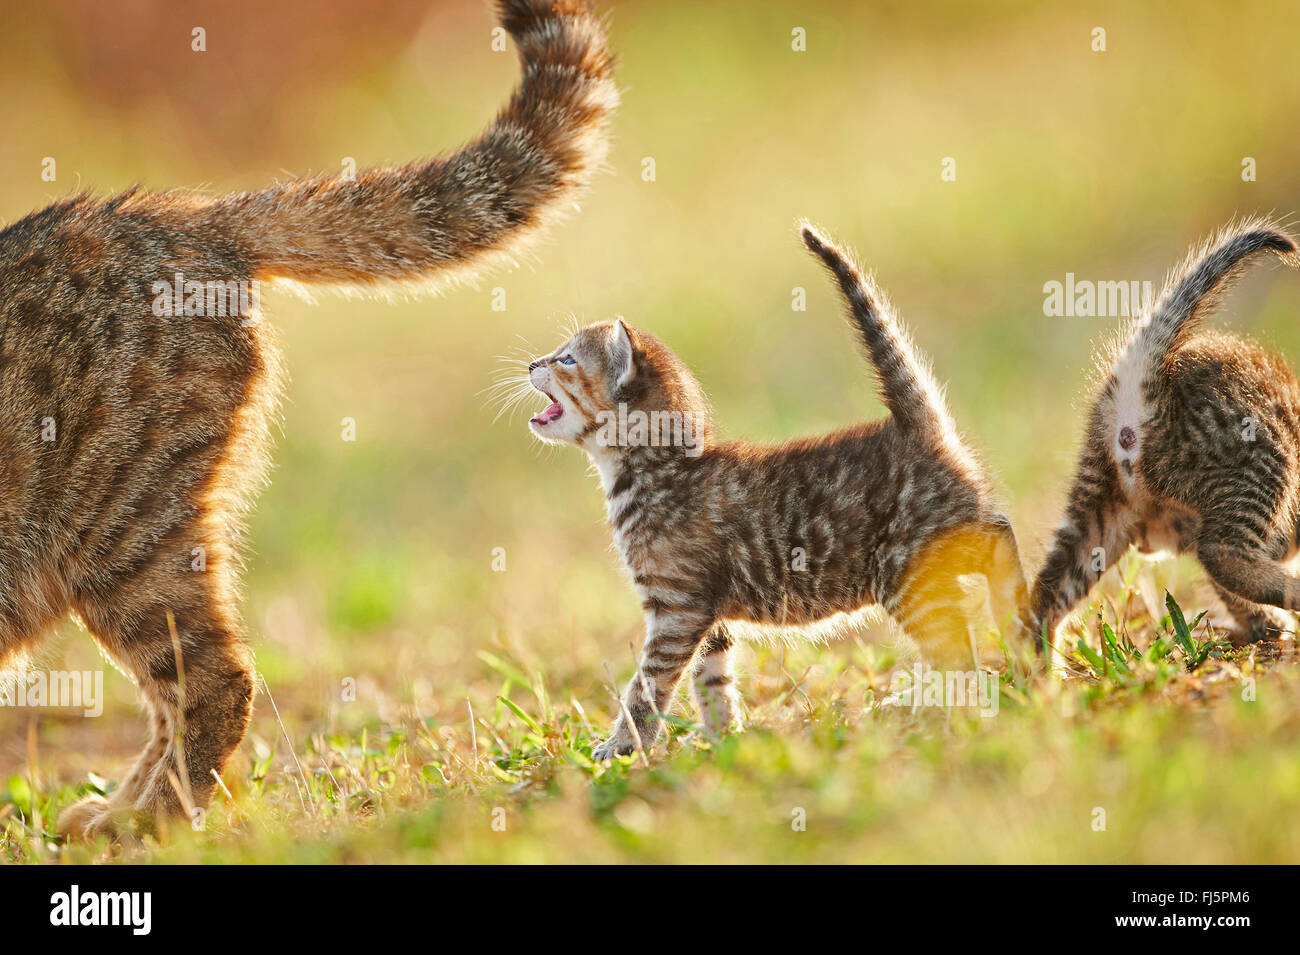 Chat domestique, le chat domestique (Felis silvestris catus), f. miaowing chaton avec un frère et sa mère dans un pré, Allemagne Banque D'Images